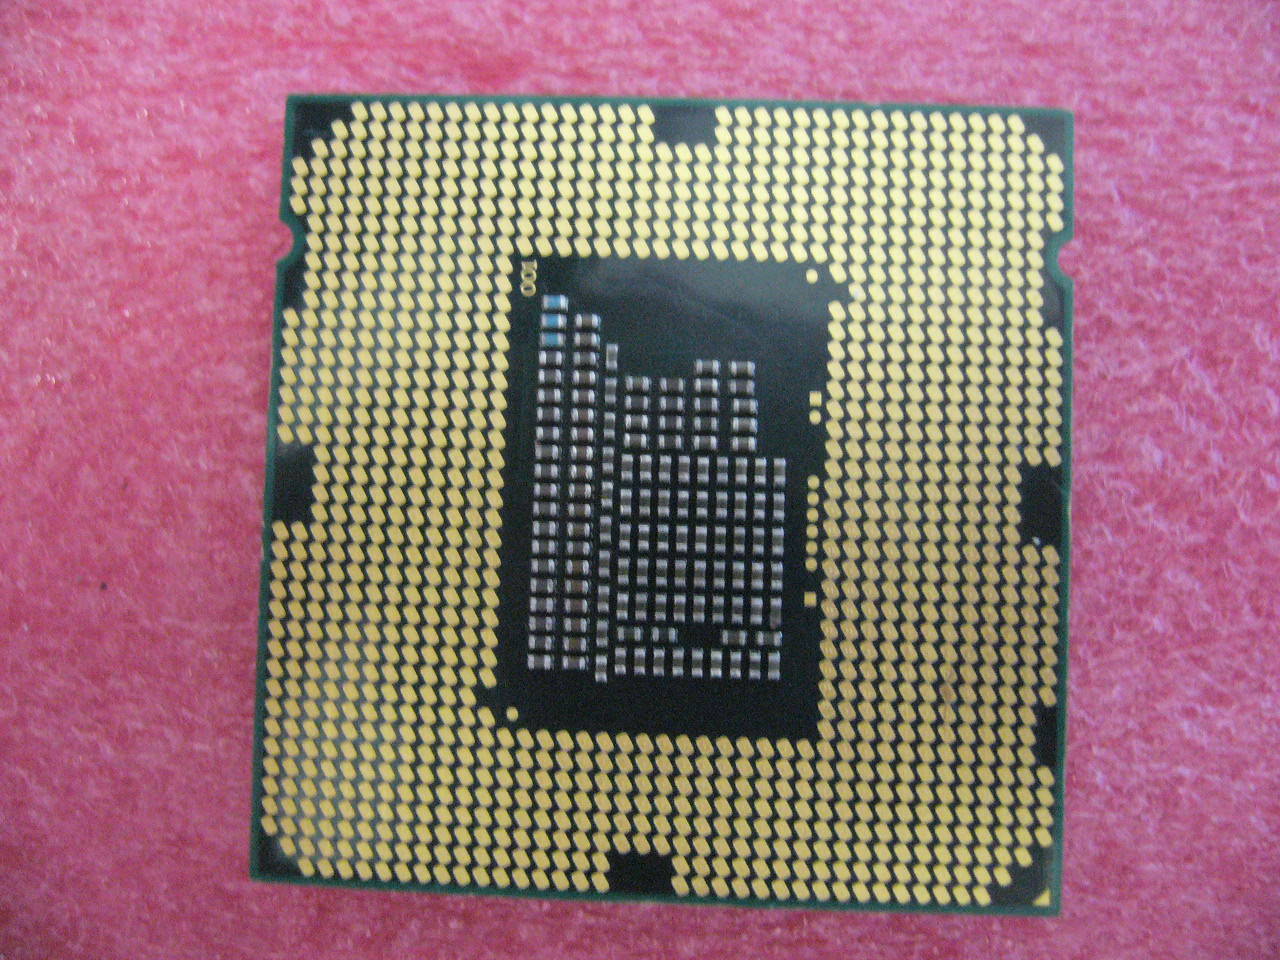 QTY 1x INTEL Pentium CPU G645 2.9GHZ/3MB LGA1155 SR0RS - zum Schließen ins Bild klicken